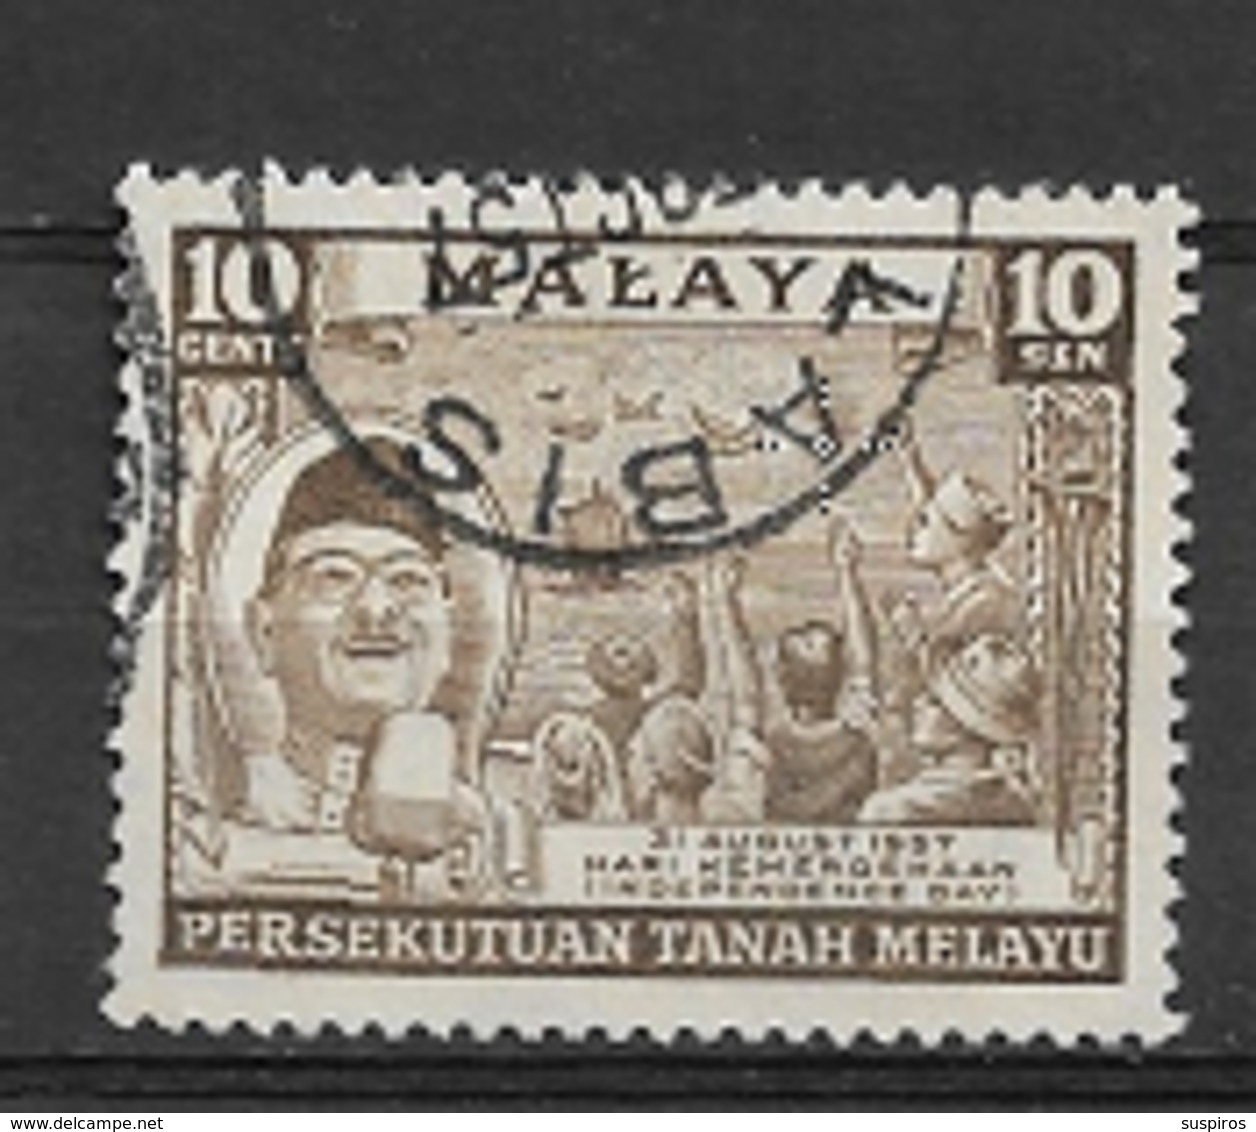 MALASIA FEDERATION  1957 Independence Day   USED - Federation Of Malaya